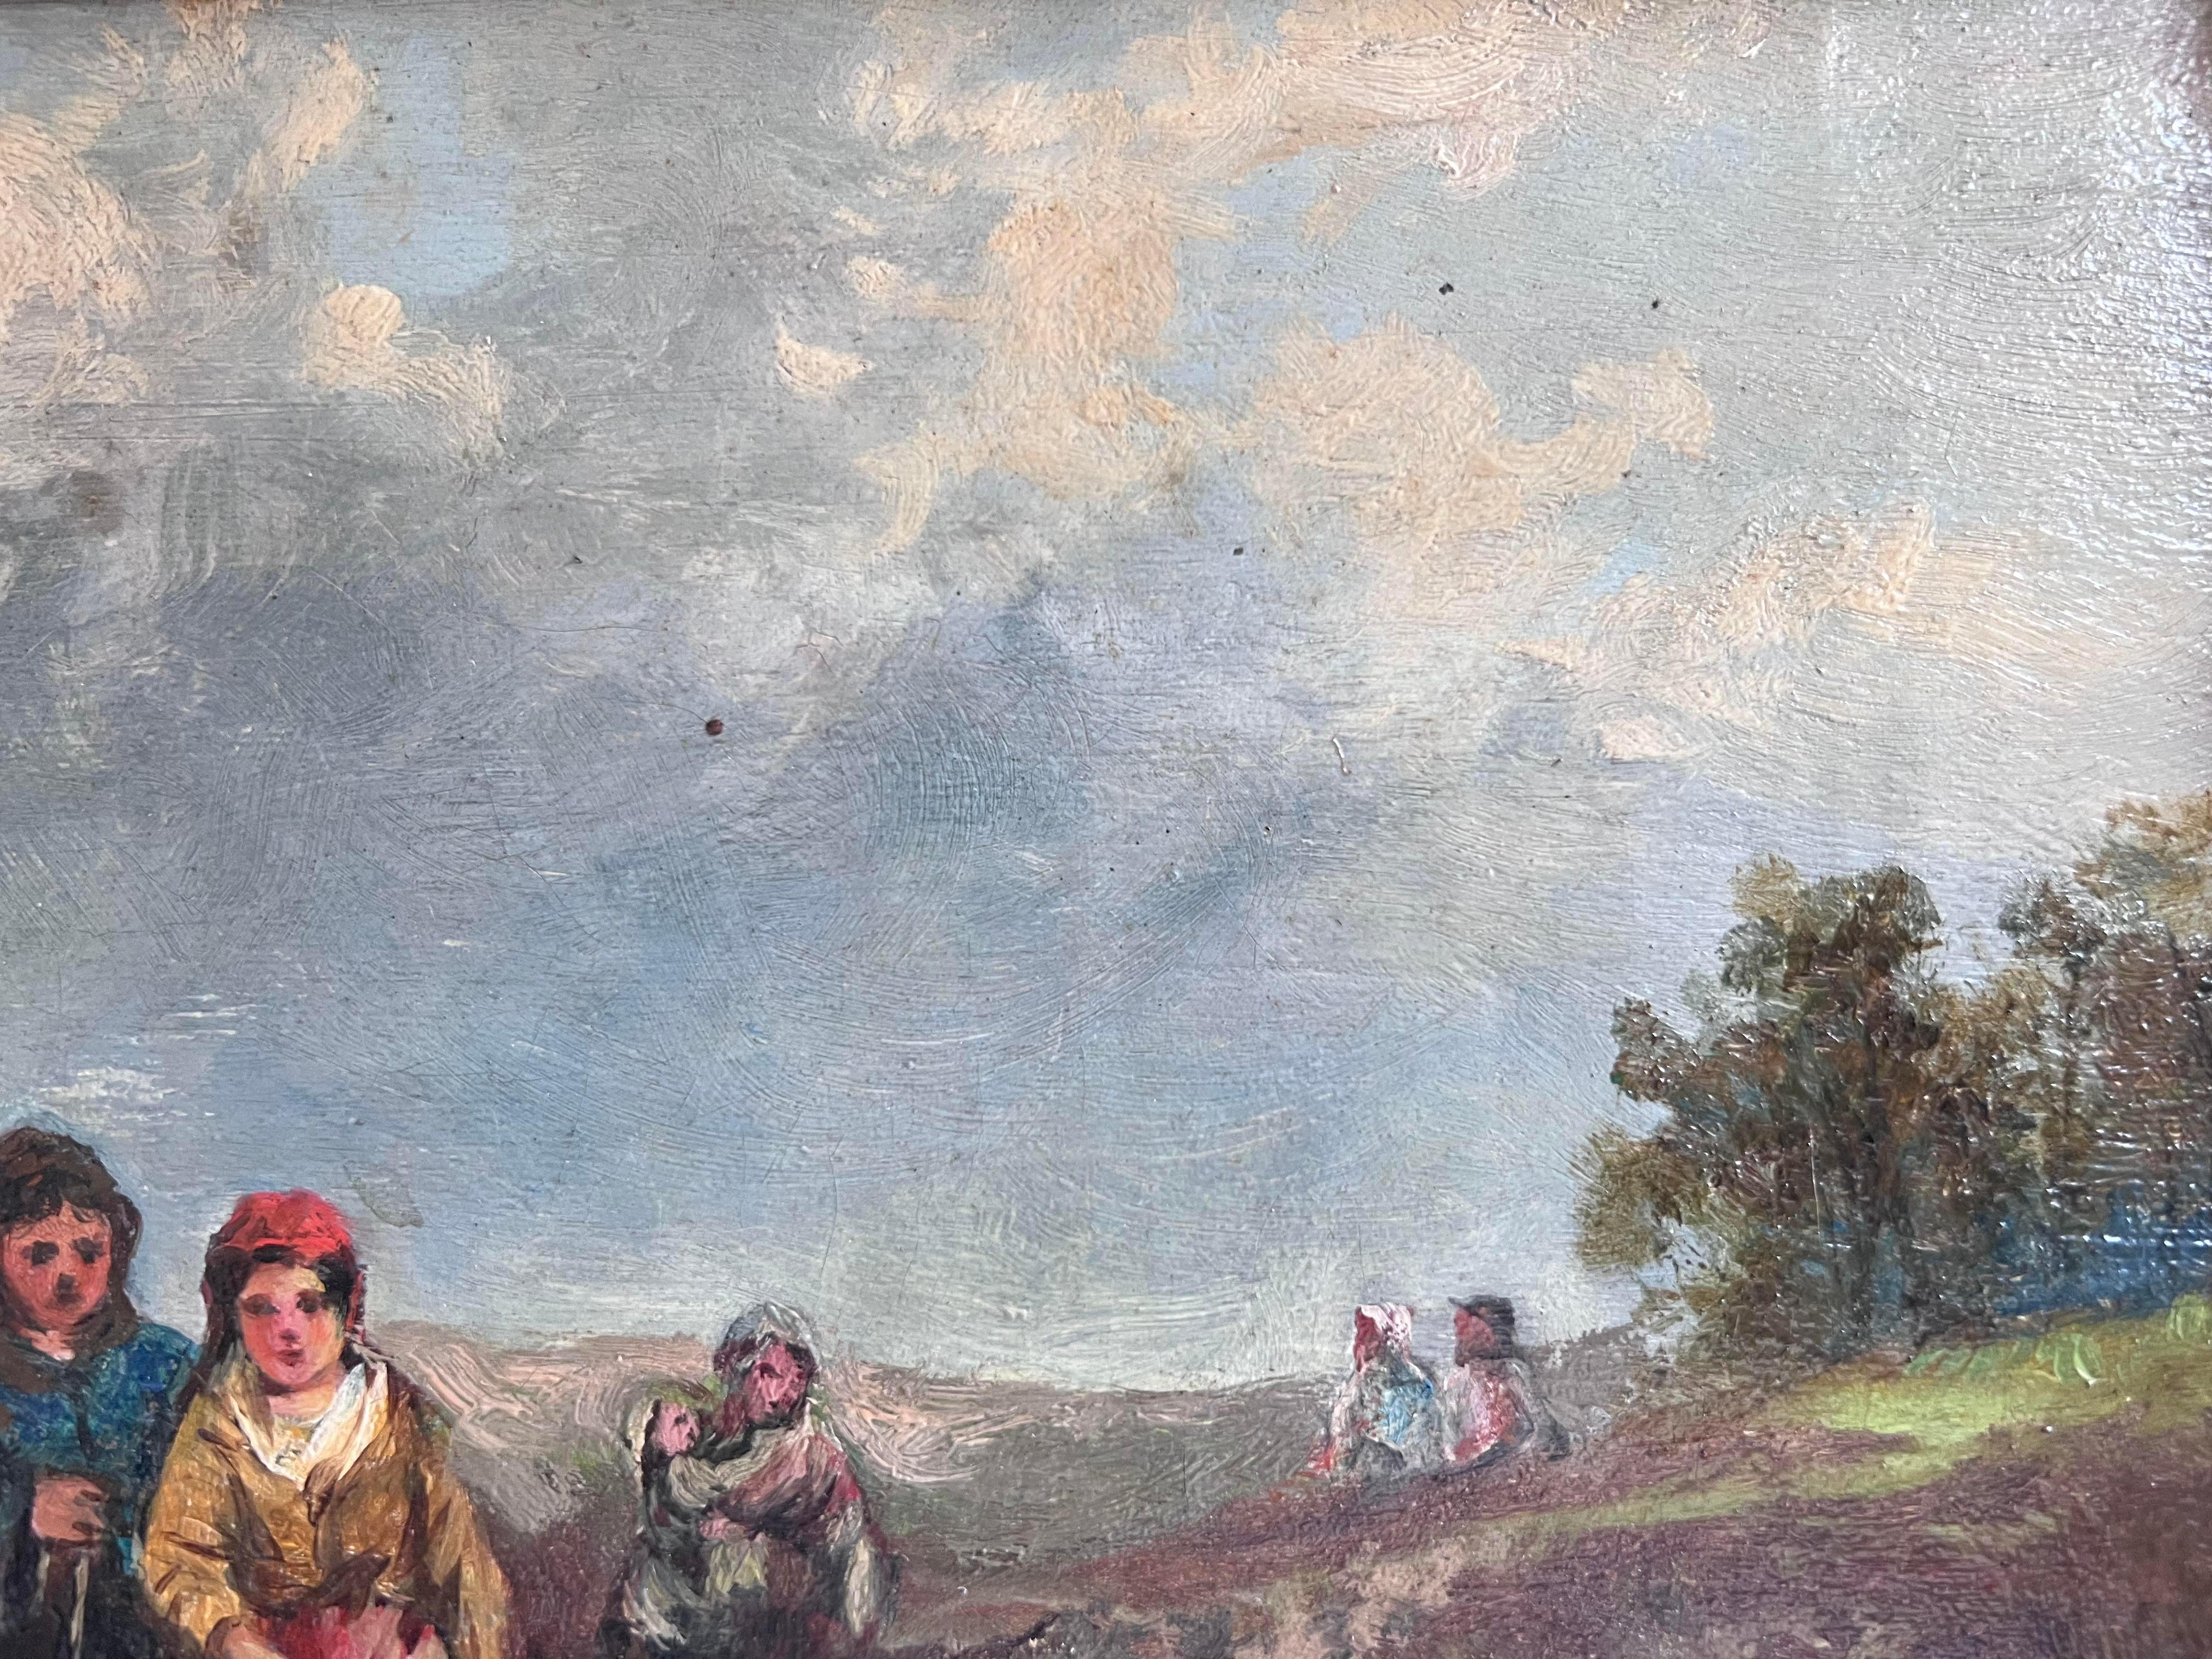 Peinture de style romantique représentant des personnages traversant un ruisseau dans un paysage côtier européen. La peinture date du 19ème siècle et est présumée être anglaise car l'œuvre est peinte sur un carton d'artiste anglais du 19ème siècle.